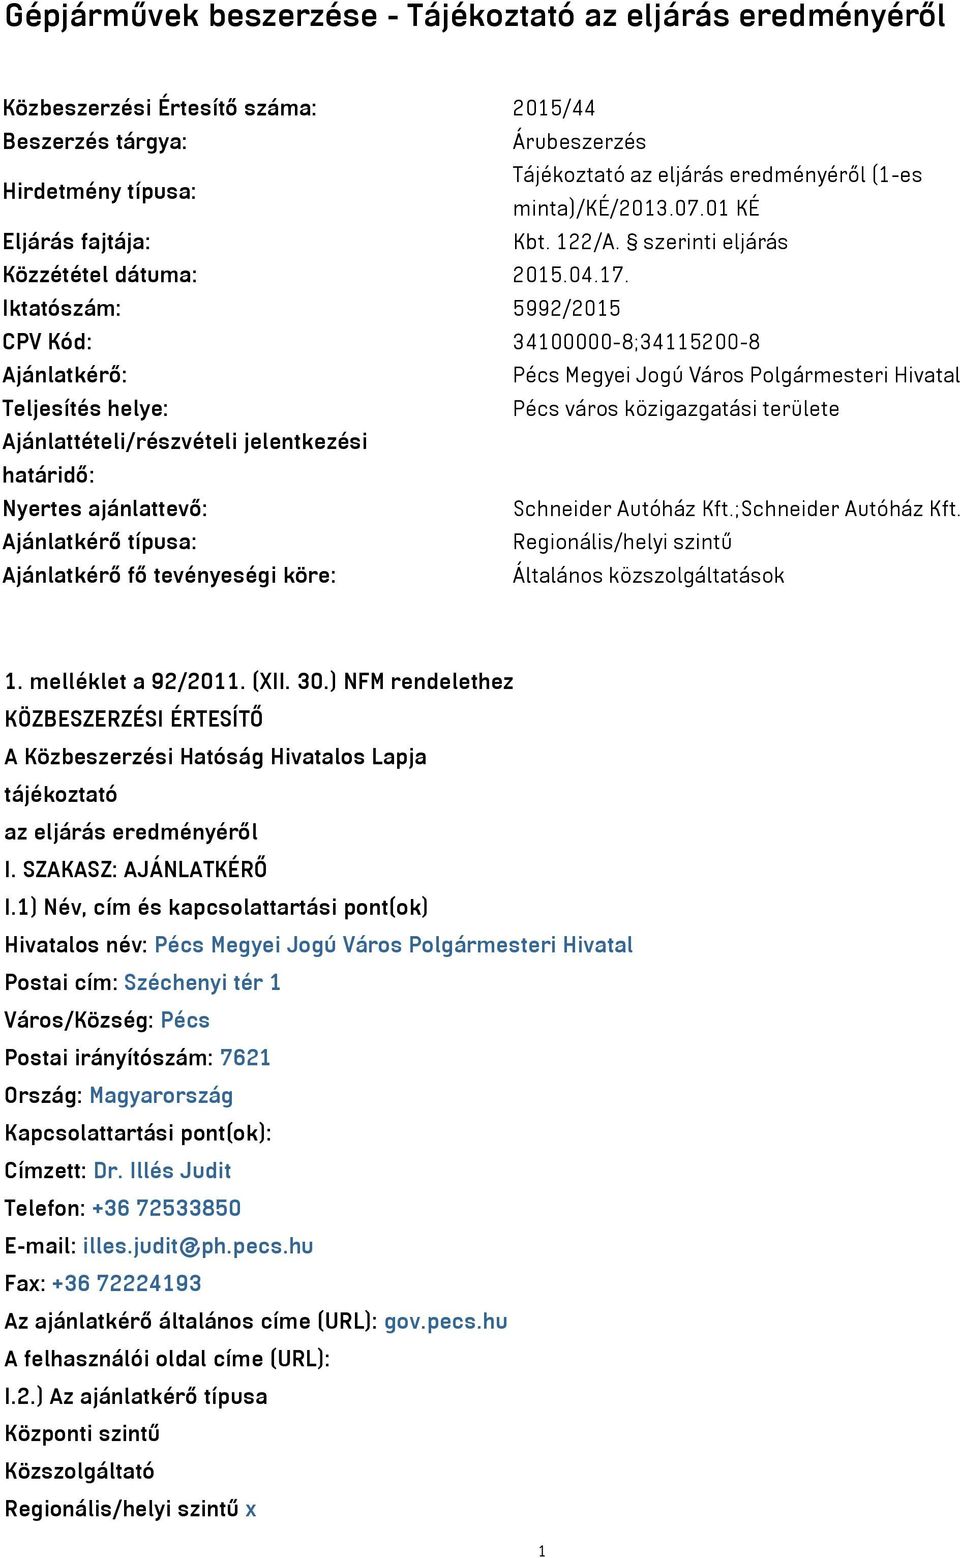 Iktatószám: 5992/2015 CPV Kód: 34100000-8;34115200-8 Ajánlatkérő: Pécs Megyei Jogú Város Polgármesteri Hivatal Teljesítés helye: Pécs város közigazgatási területe Ajánlattételi/részvételi